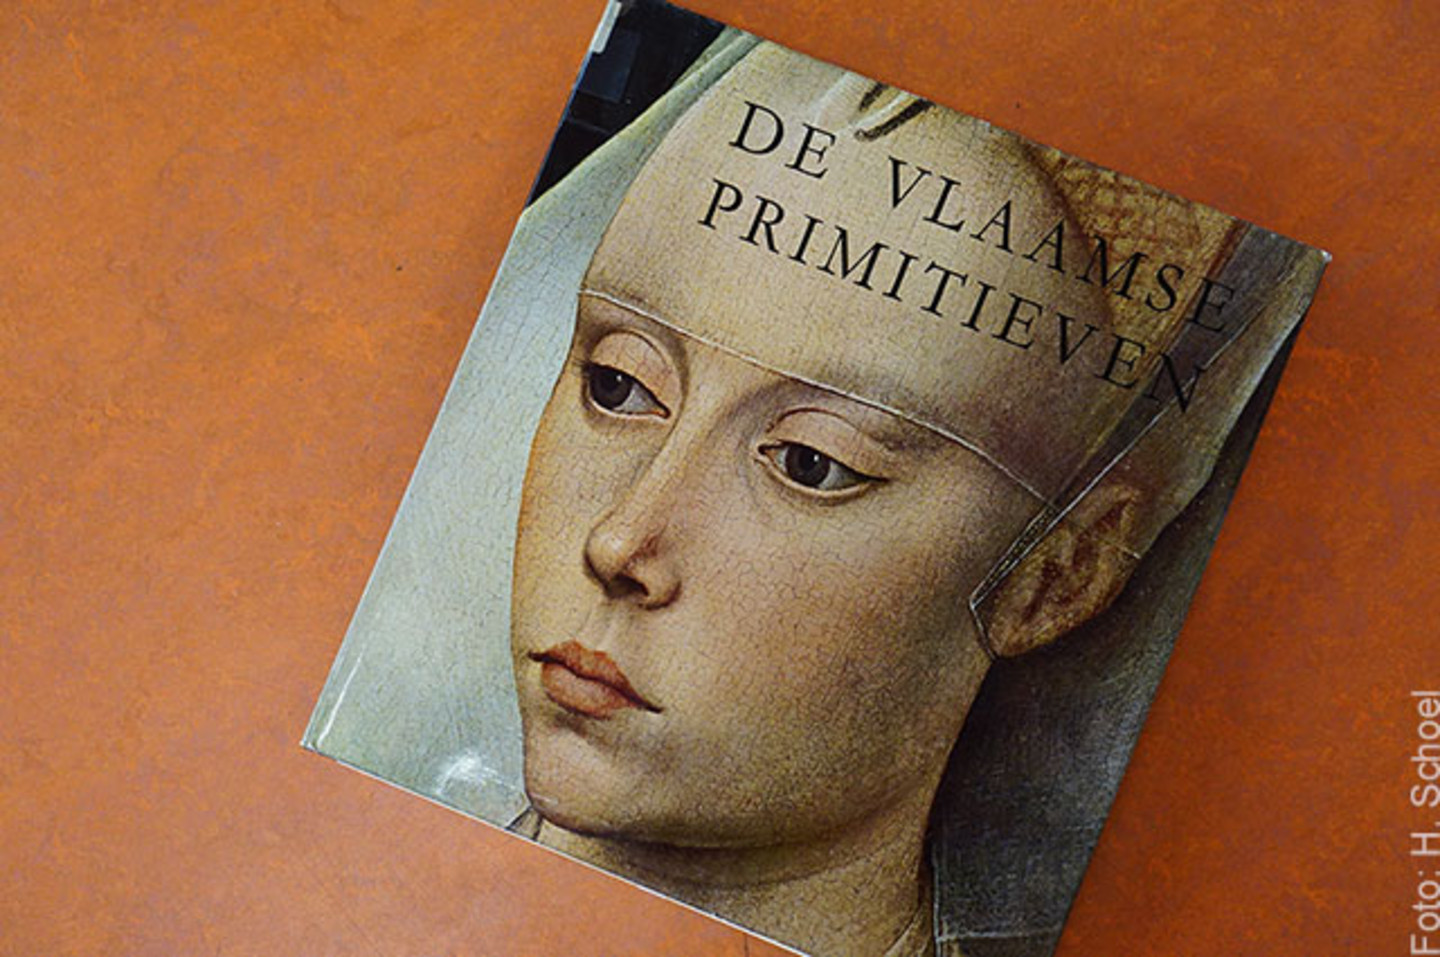 Ein Foto eines Buches mit dem Titel "De Vlaamse Primitieven", aus dem Jahr 1960. Dort abgebildet ist eine Nahaufnahme eines Gesichtes.